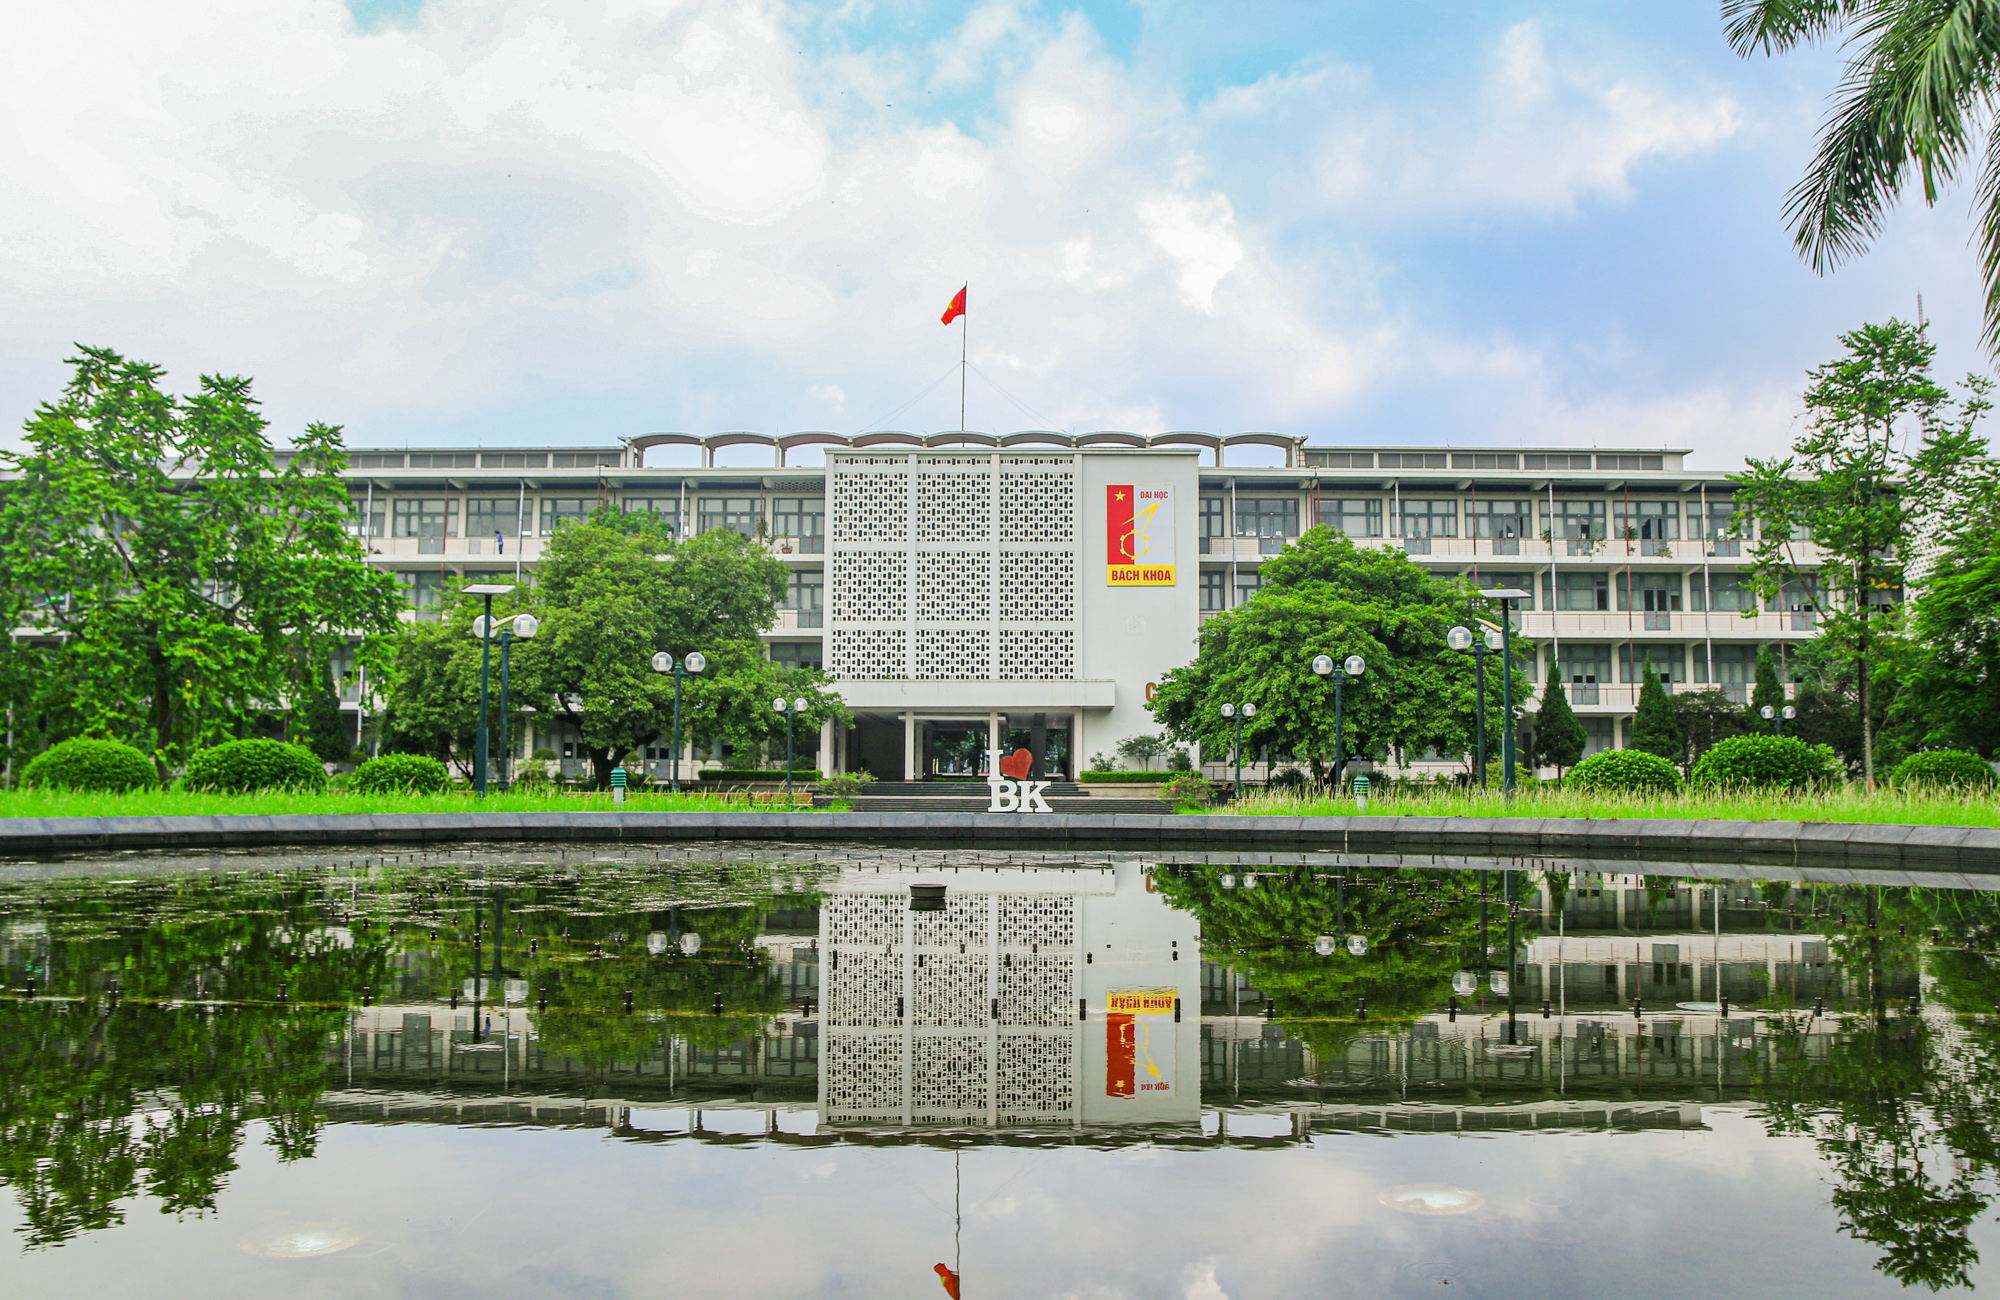 Đại học Bách Khoa Hà Nội - là một trong những trường đại học hàng đầu tại Hà Nội và đã hoạt động hơn 60 năm. Năm 2024, trường sẽ tiếp tục phát triển với mục tiêu đào tạo ra những sinh viên tài năng, có khả năng thích nghi với môi trường kinh tế mới. Hãy xem hình ảnh để hiểu rõ hơn về trường đại học này!